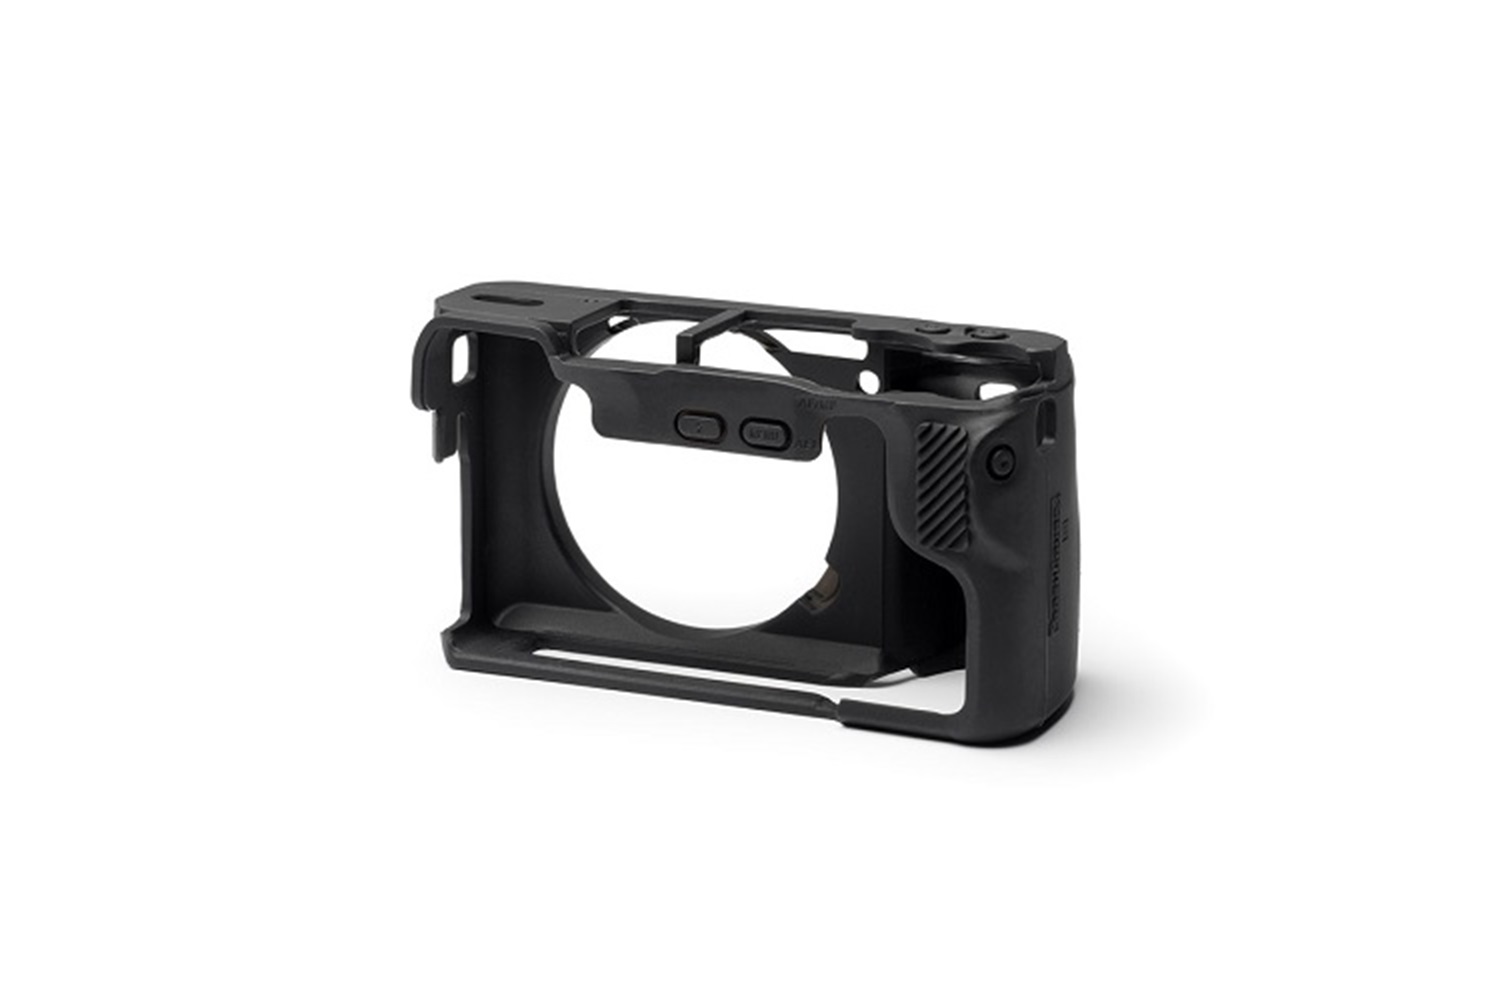 Easycover Sony A6500 Silikon Kılıf Siyah